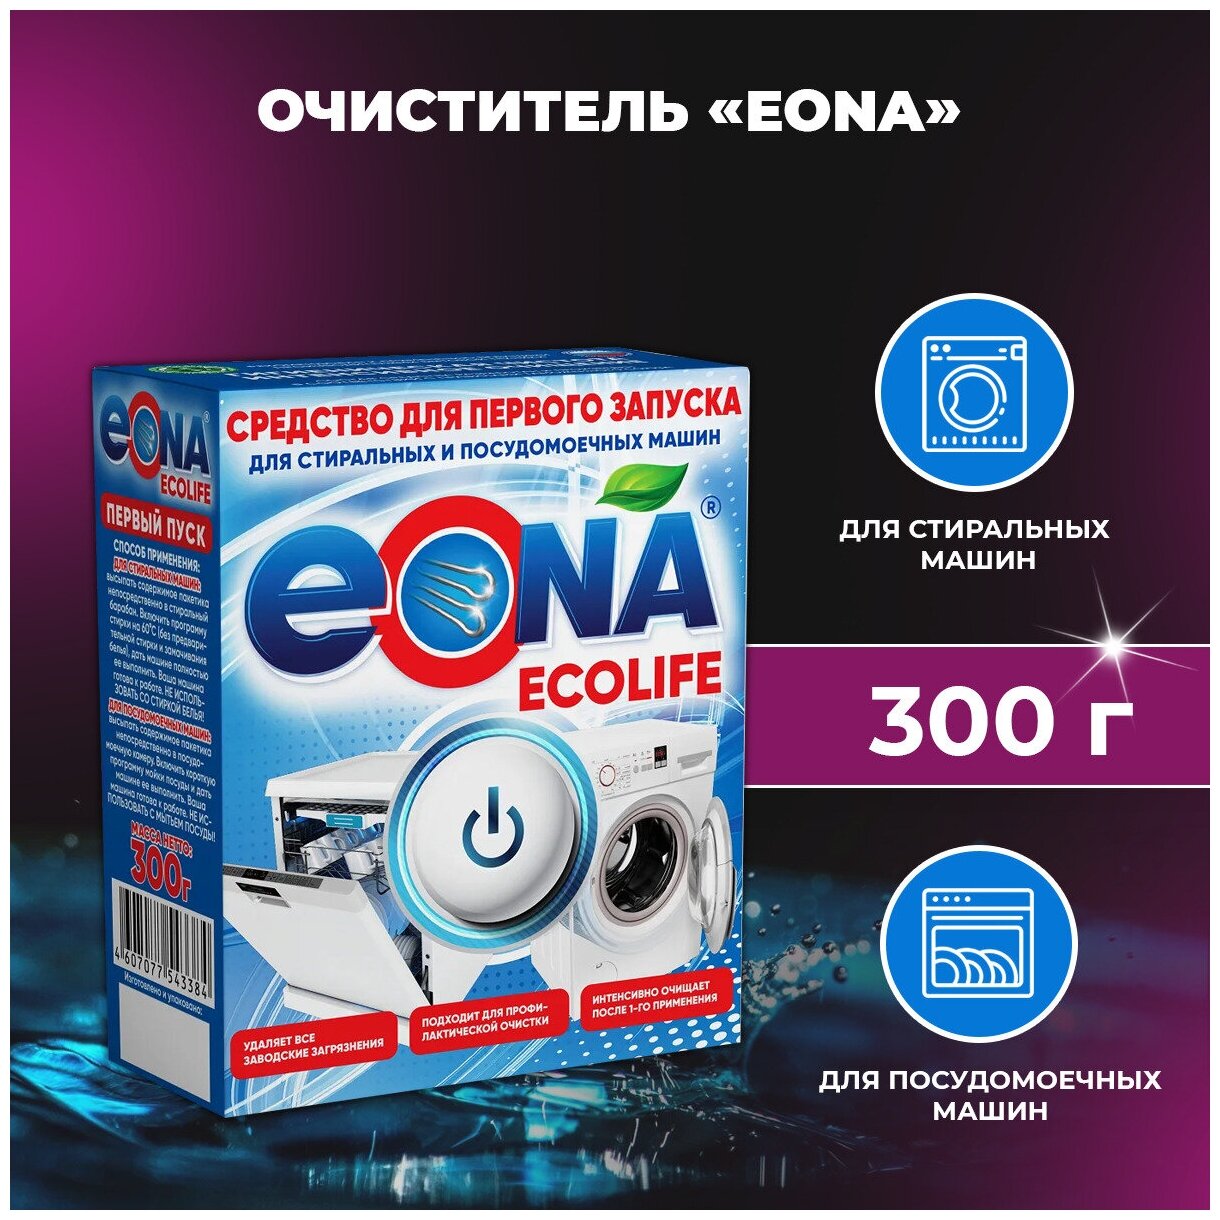 Средство для первого запуска, очиститель для стиральной и посудомоечной машины EONA Ecolife, 300 г